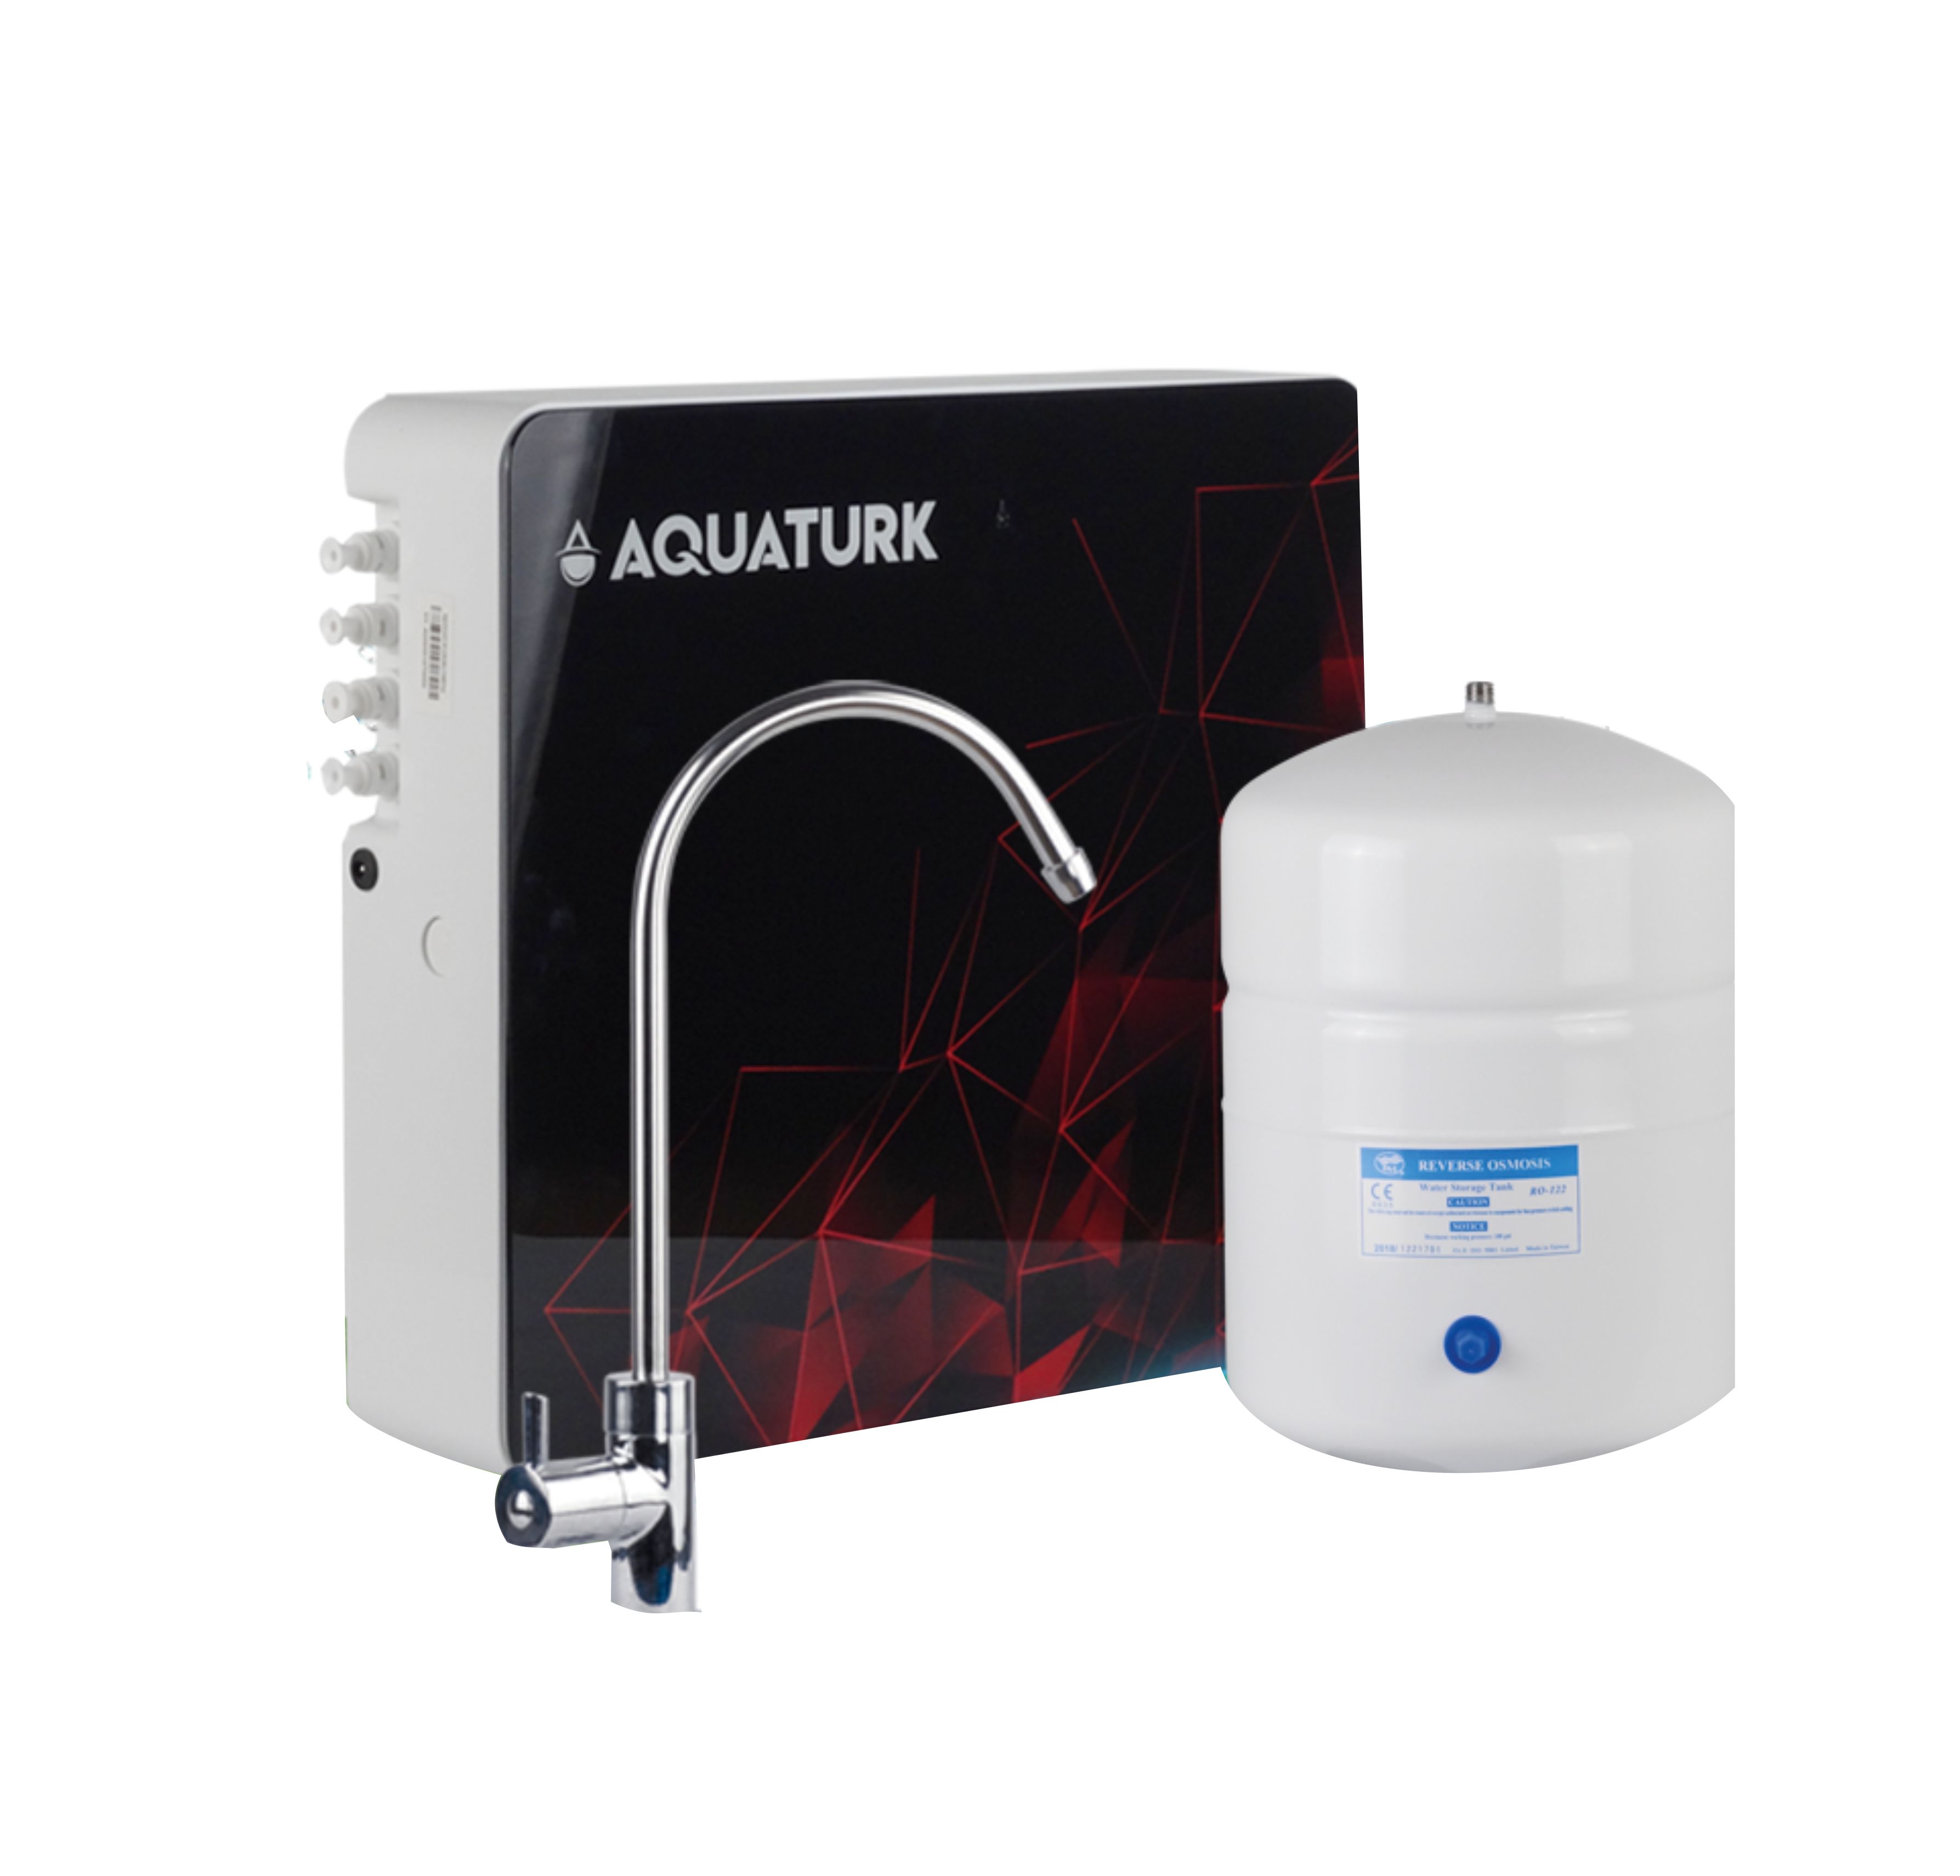 Aquatürk Slim Kasa 5 Aşamalı Su Sistemi